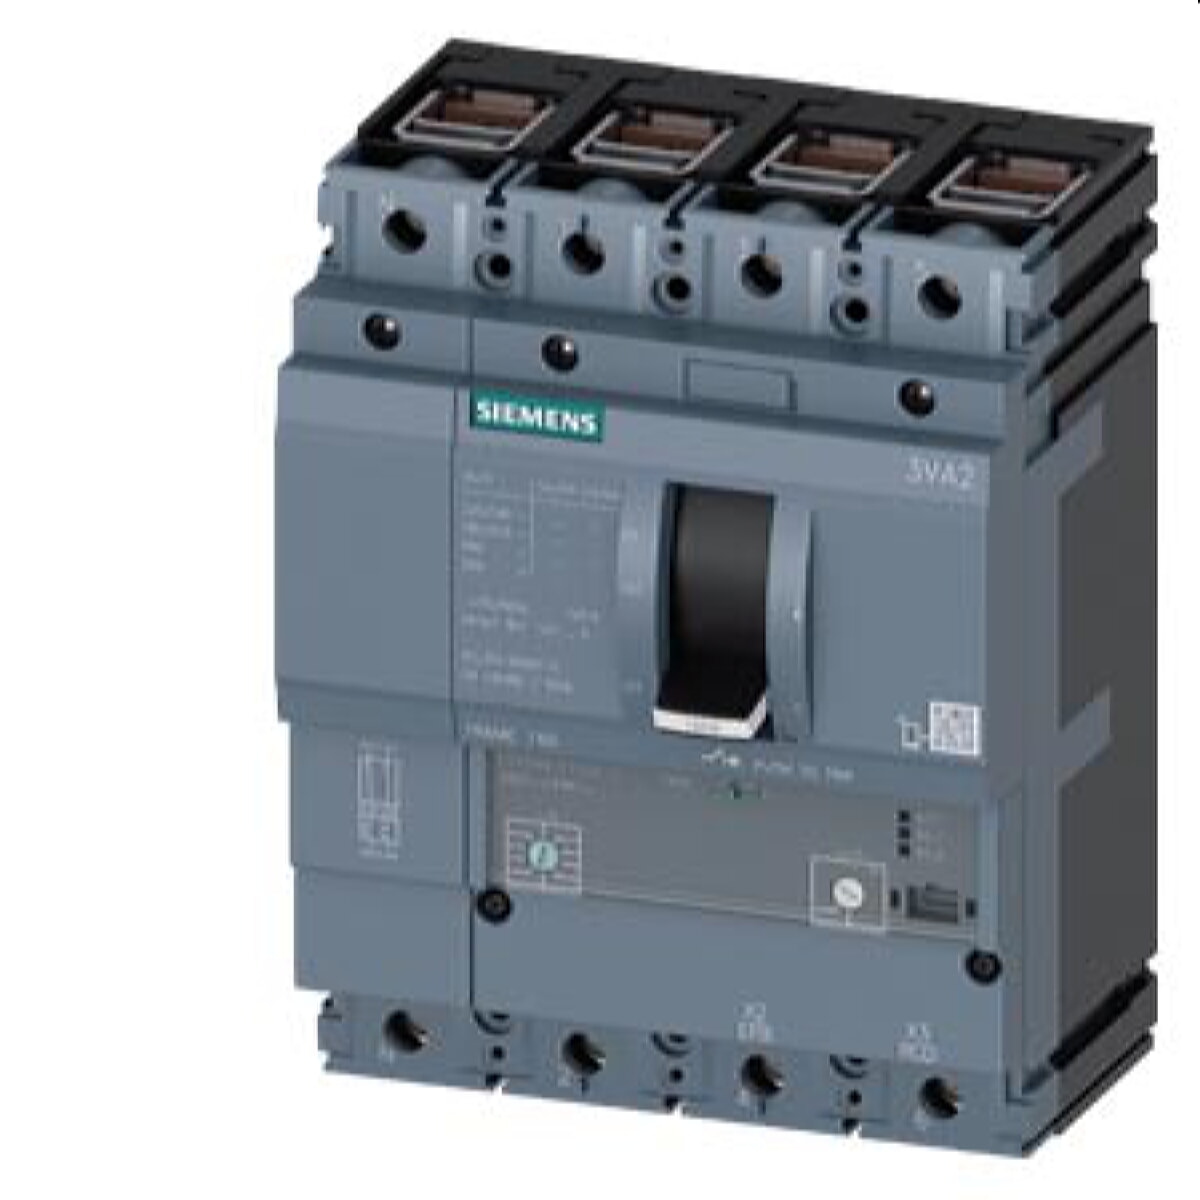 Siemens Leistungsschalter 3VA2 4polig IN25A IR10A-25A 3VA2125-6HK46-0AA0